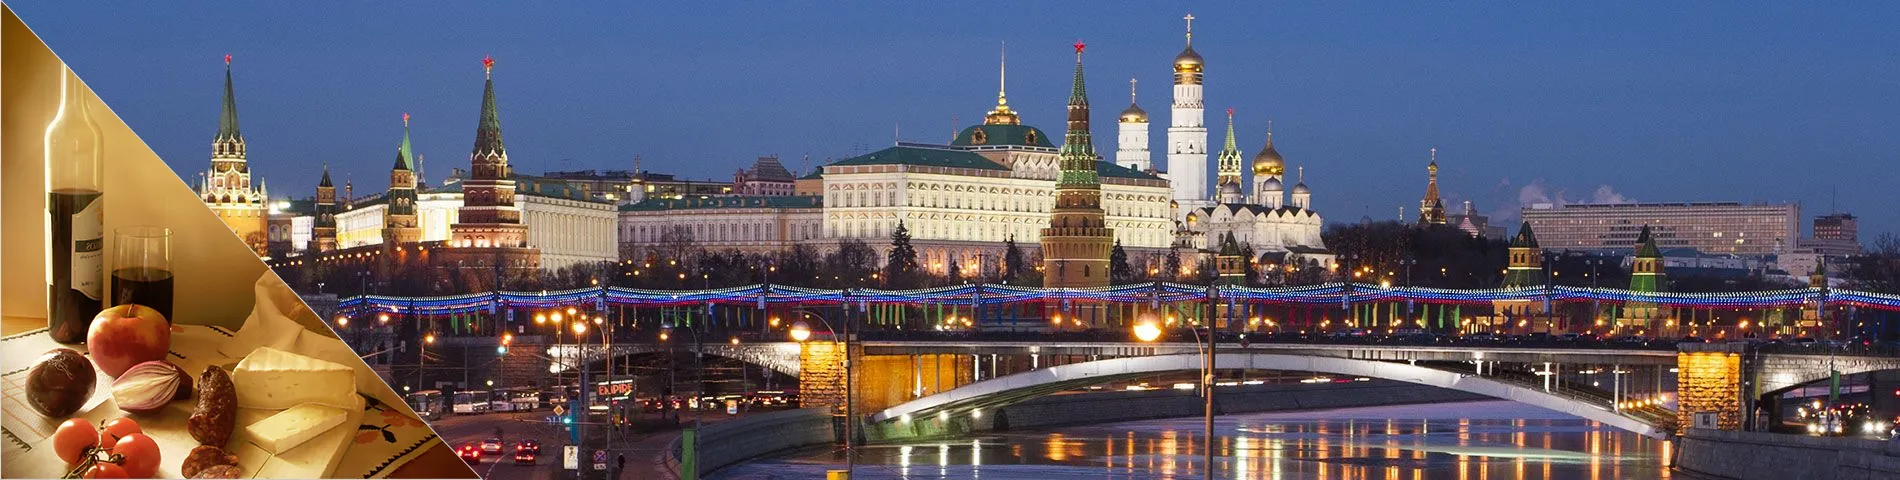 Москва - російська та пізнання культури